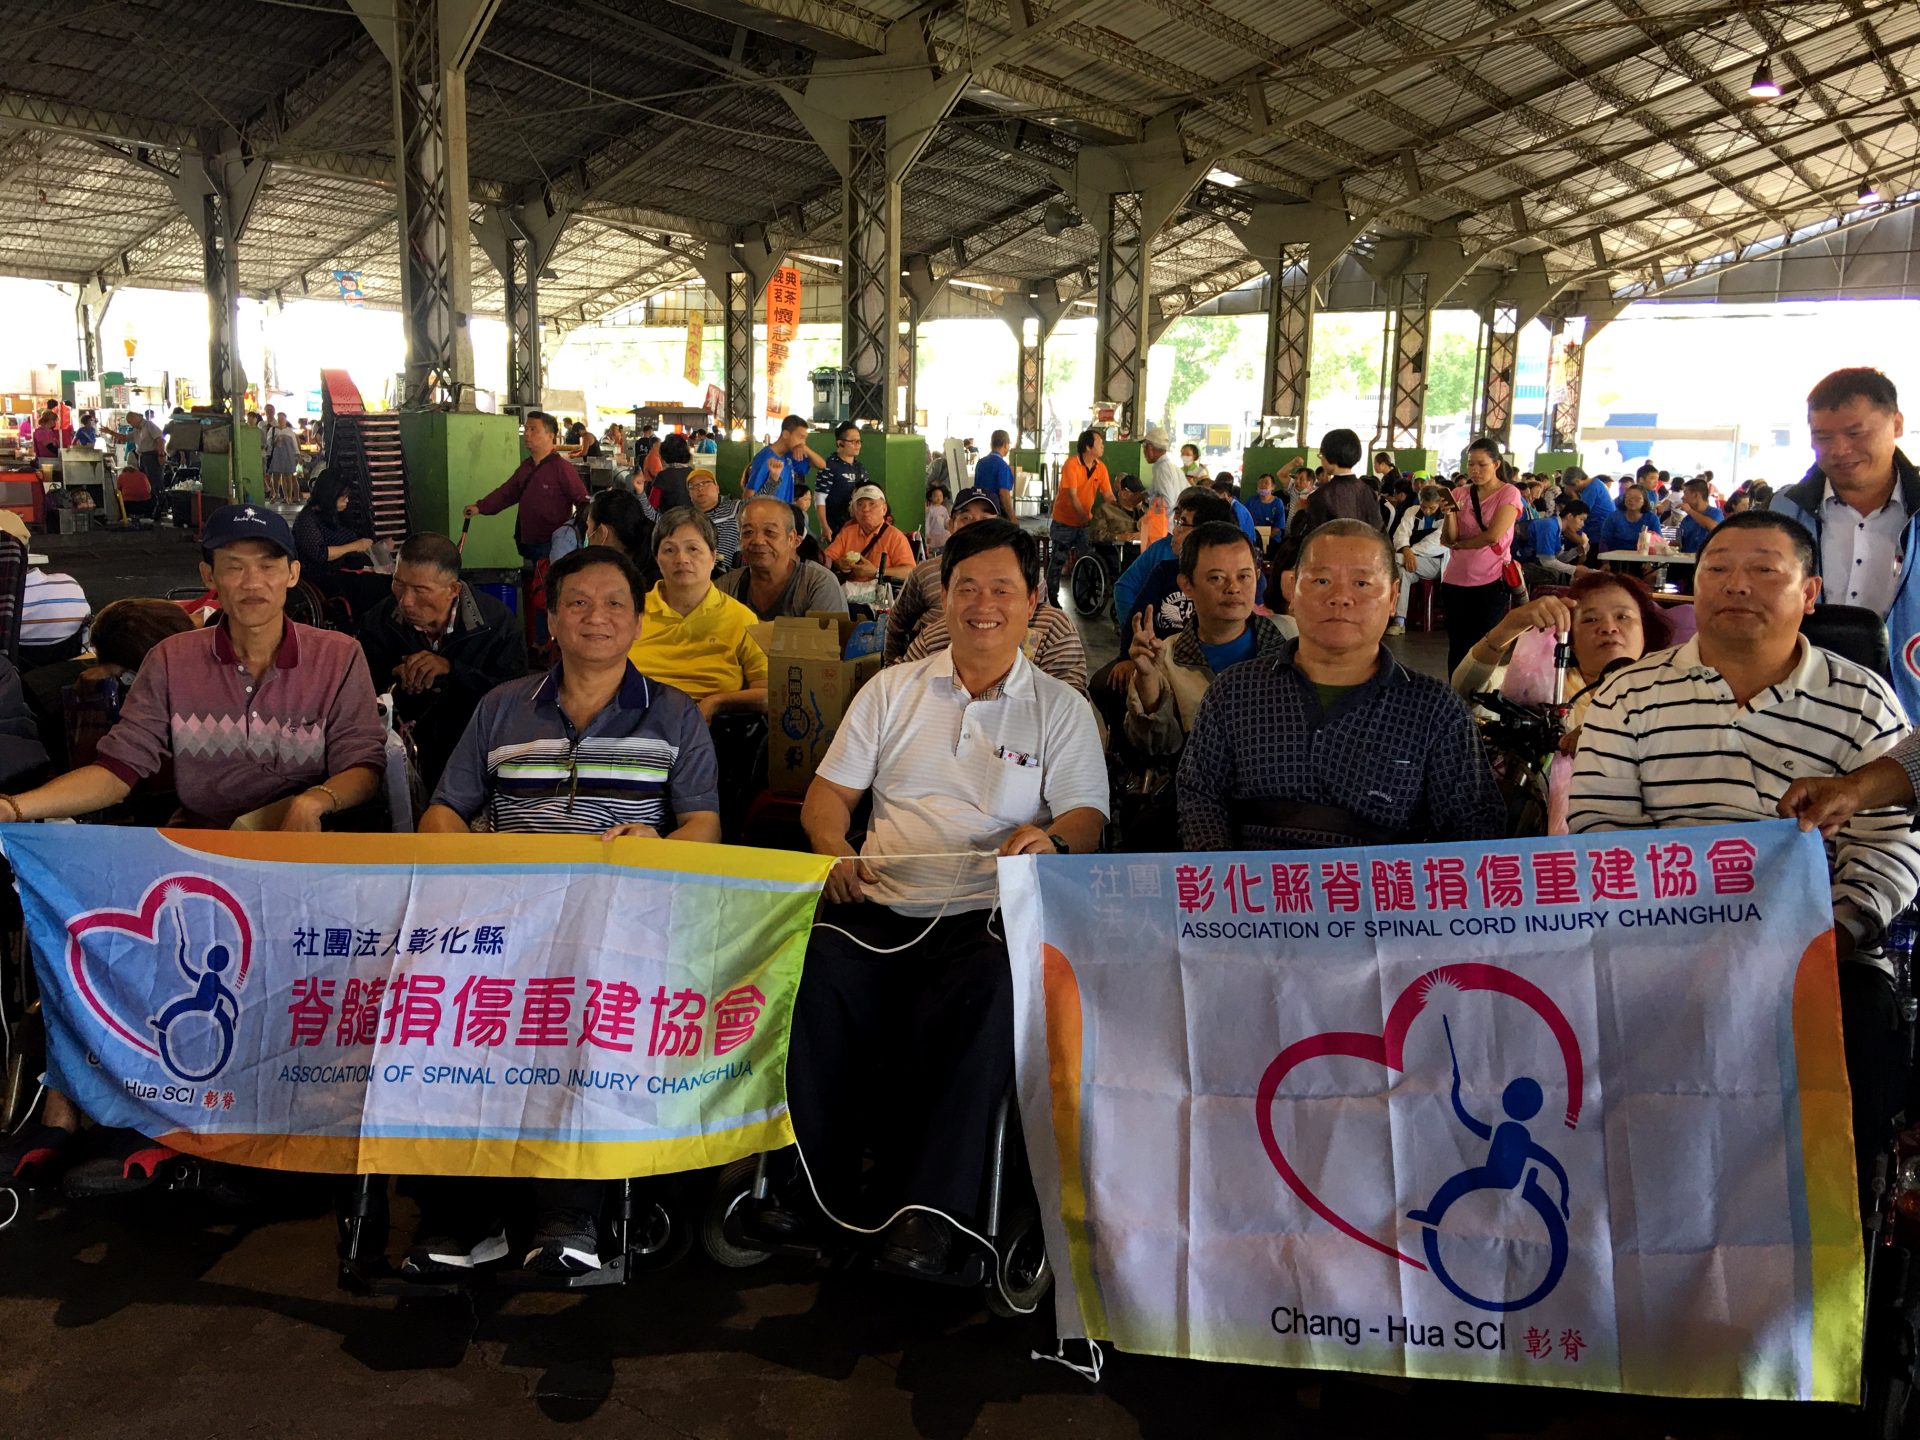 108年度彰化縣國際身心障日園遊會暨特殊教育表揚大會，會員朋友與家屬參加踴躍，洋溢歡樂氣氛。